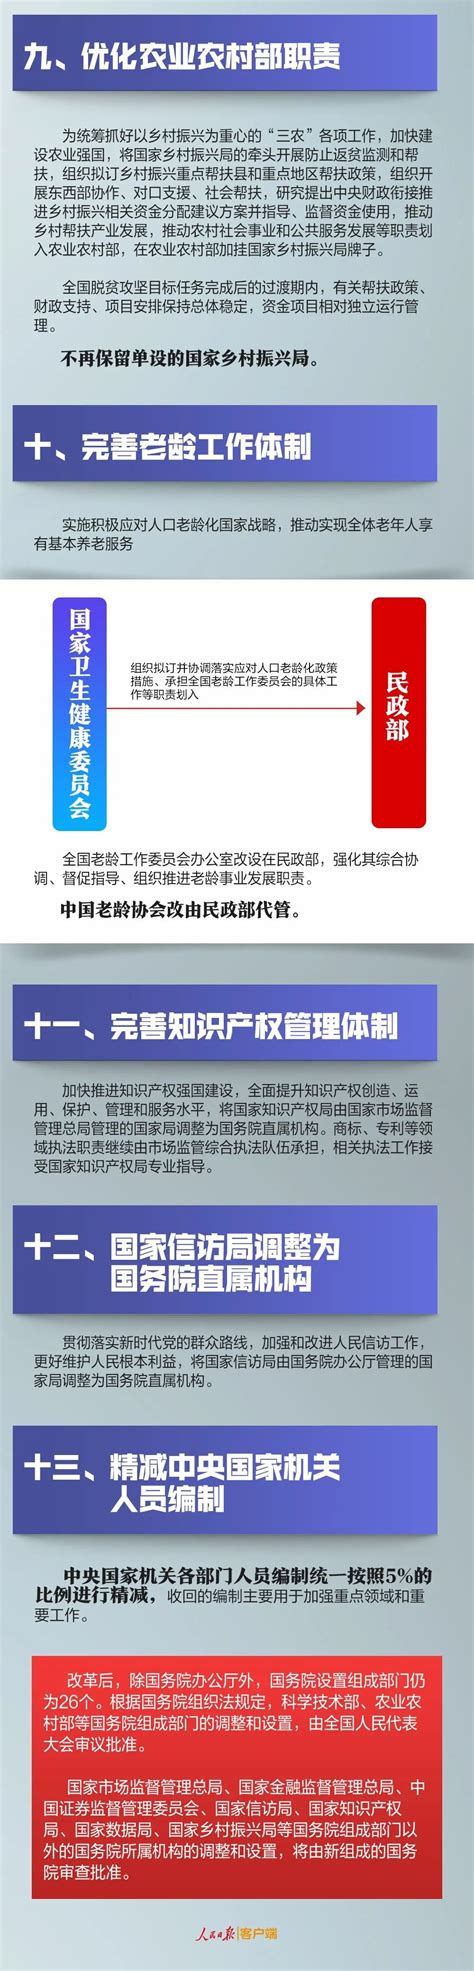 权威发布 一图读懂江苏省级机构改革方案_中国江苏网